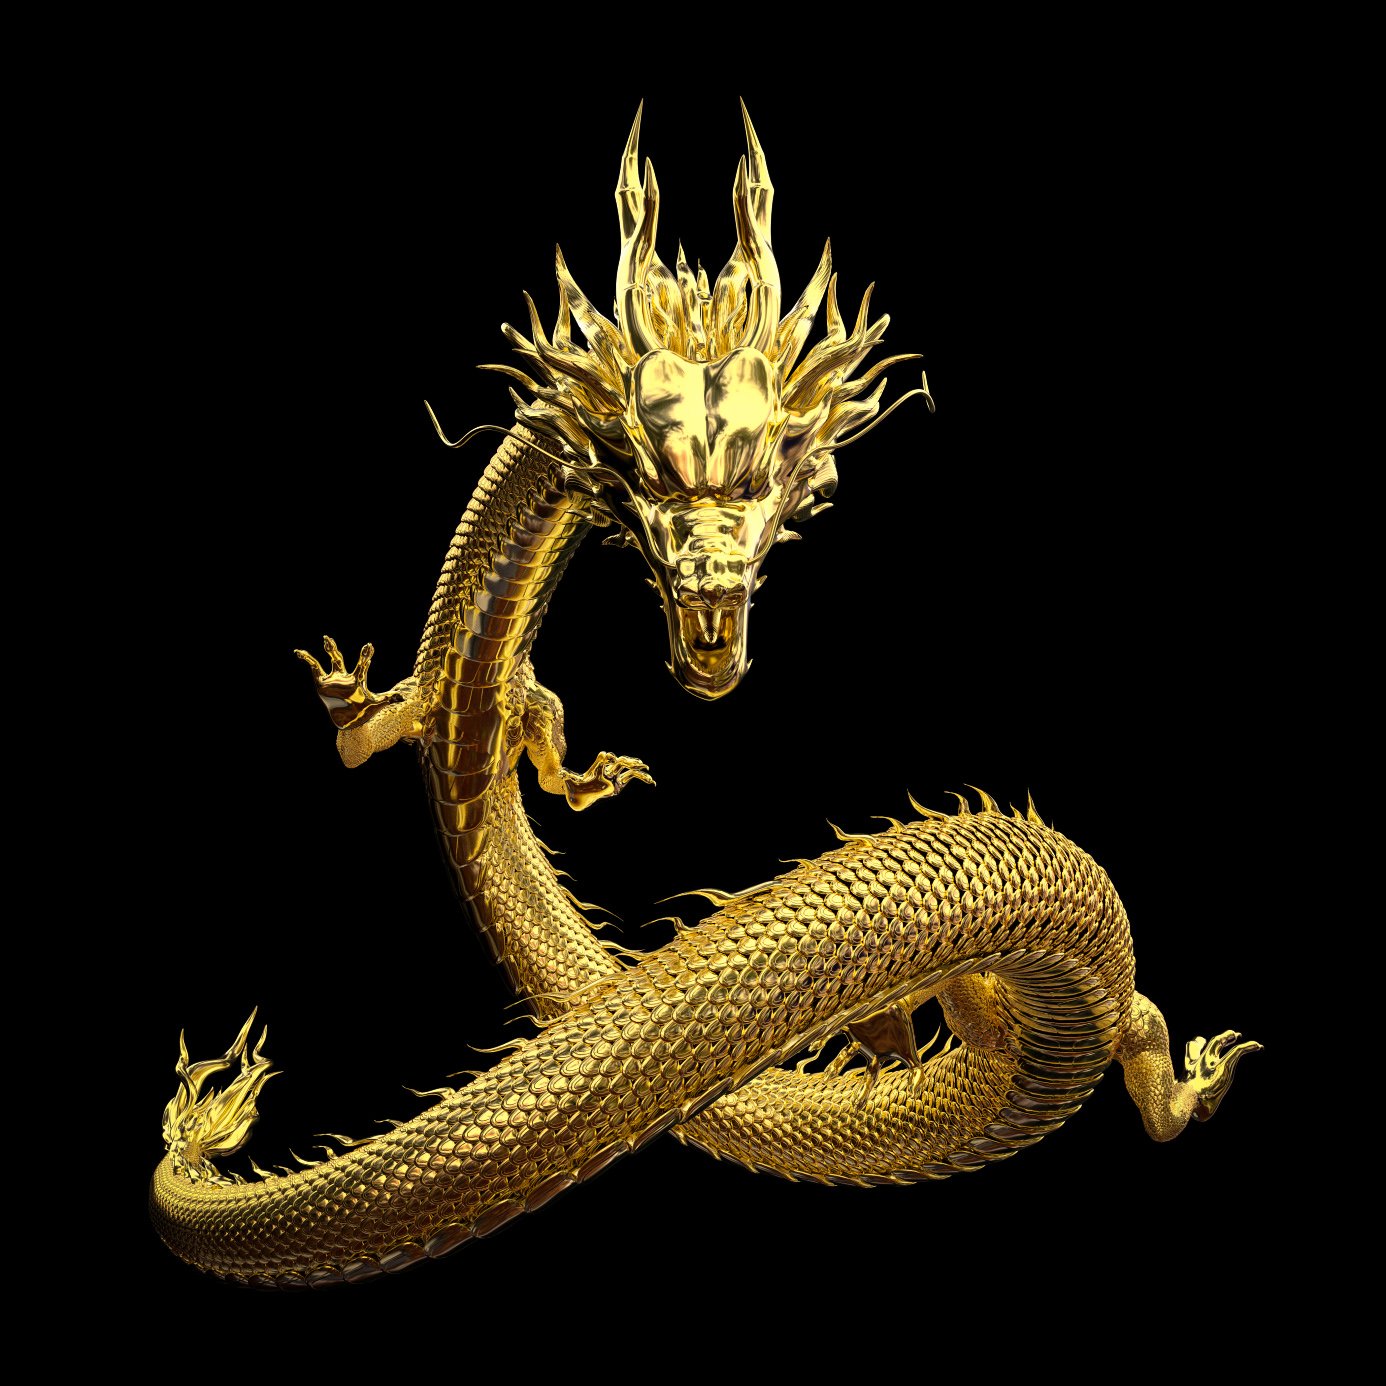 Kinijos drakonas, taip pat žinomas kaip plaučiai, yra legendinis kinų mitologijos padaras.